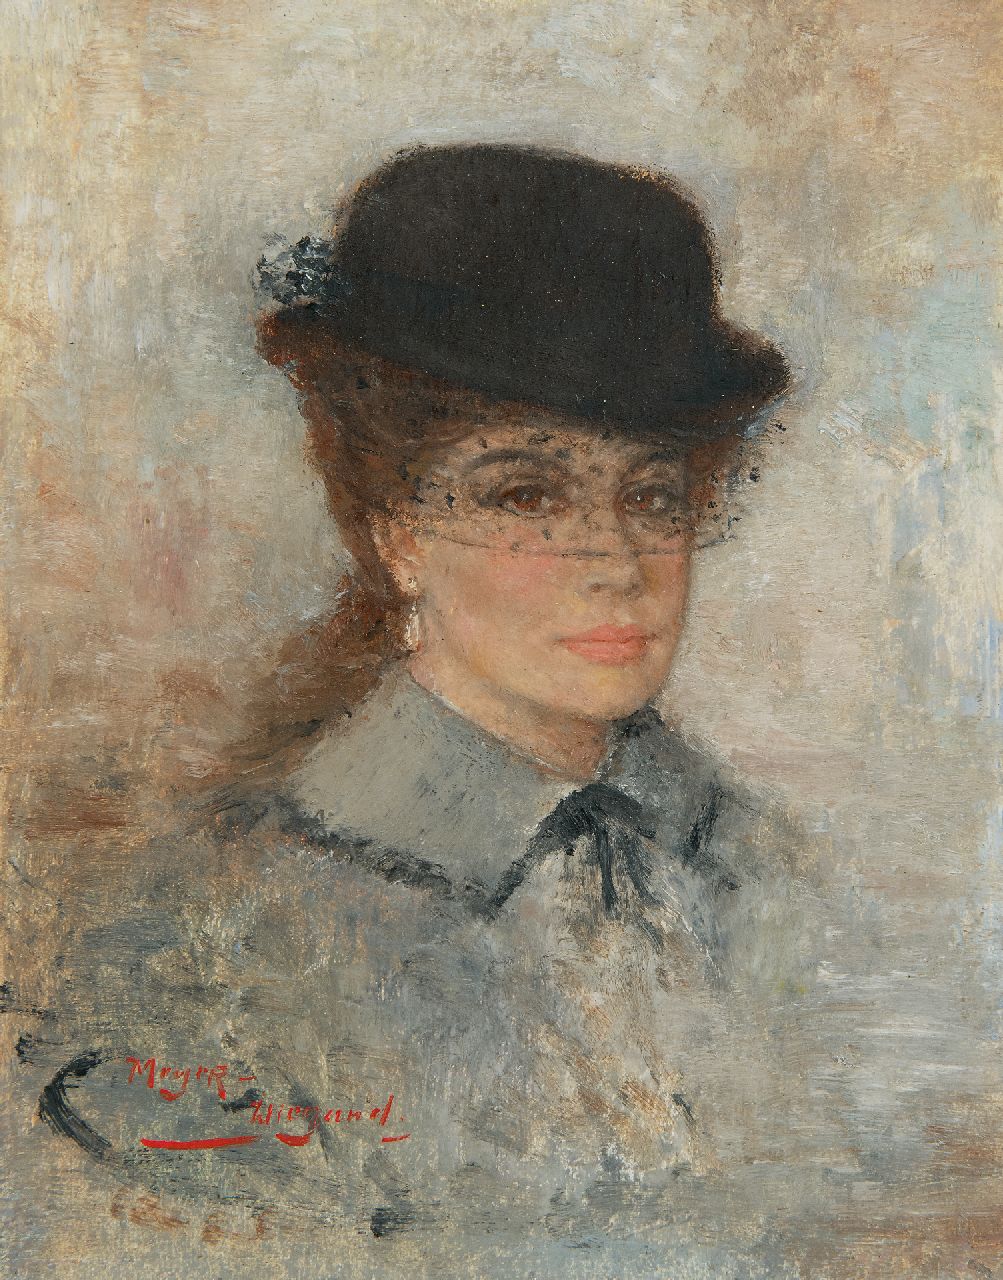 Meyer-Wiegand R.D.  | Rolf Dieter Meyer-Wiegand, Vrouw met hoedje met voile, olieverf op paneel 18,0 x 14,1 cm, gesigneerd linksonder